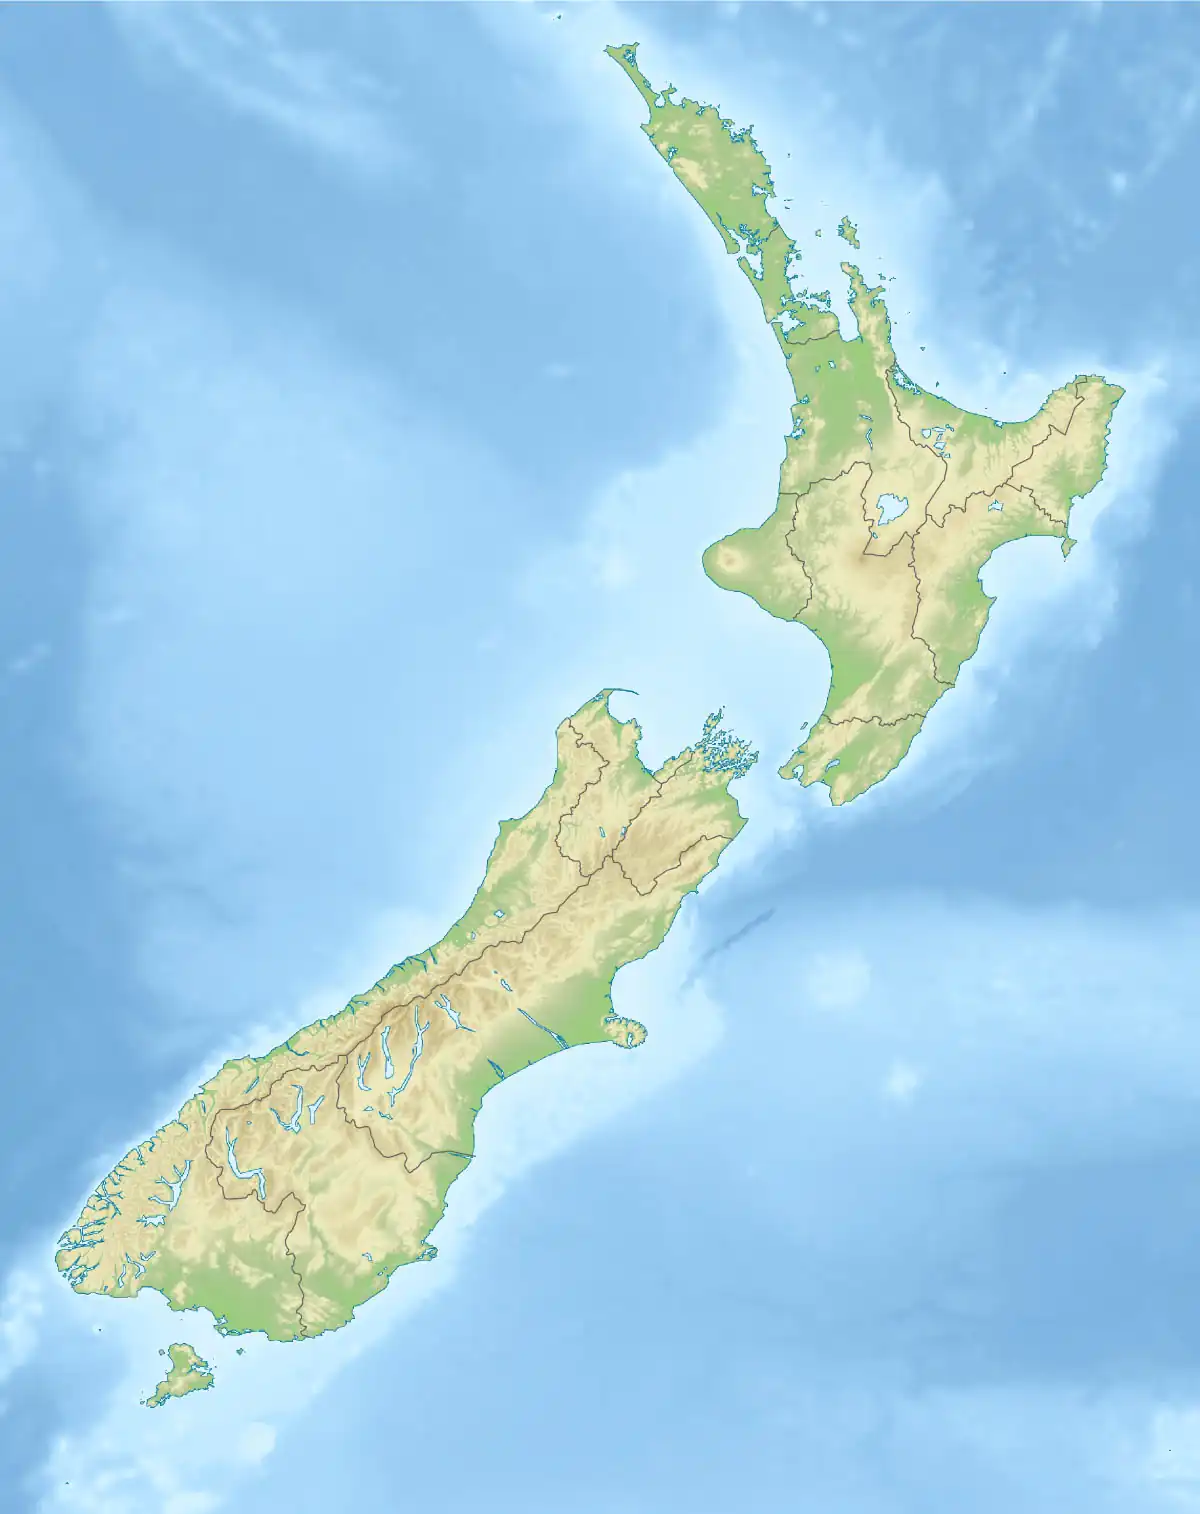 Mount Ngauruhoe is located in New Zealand